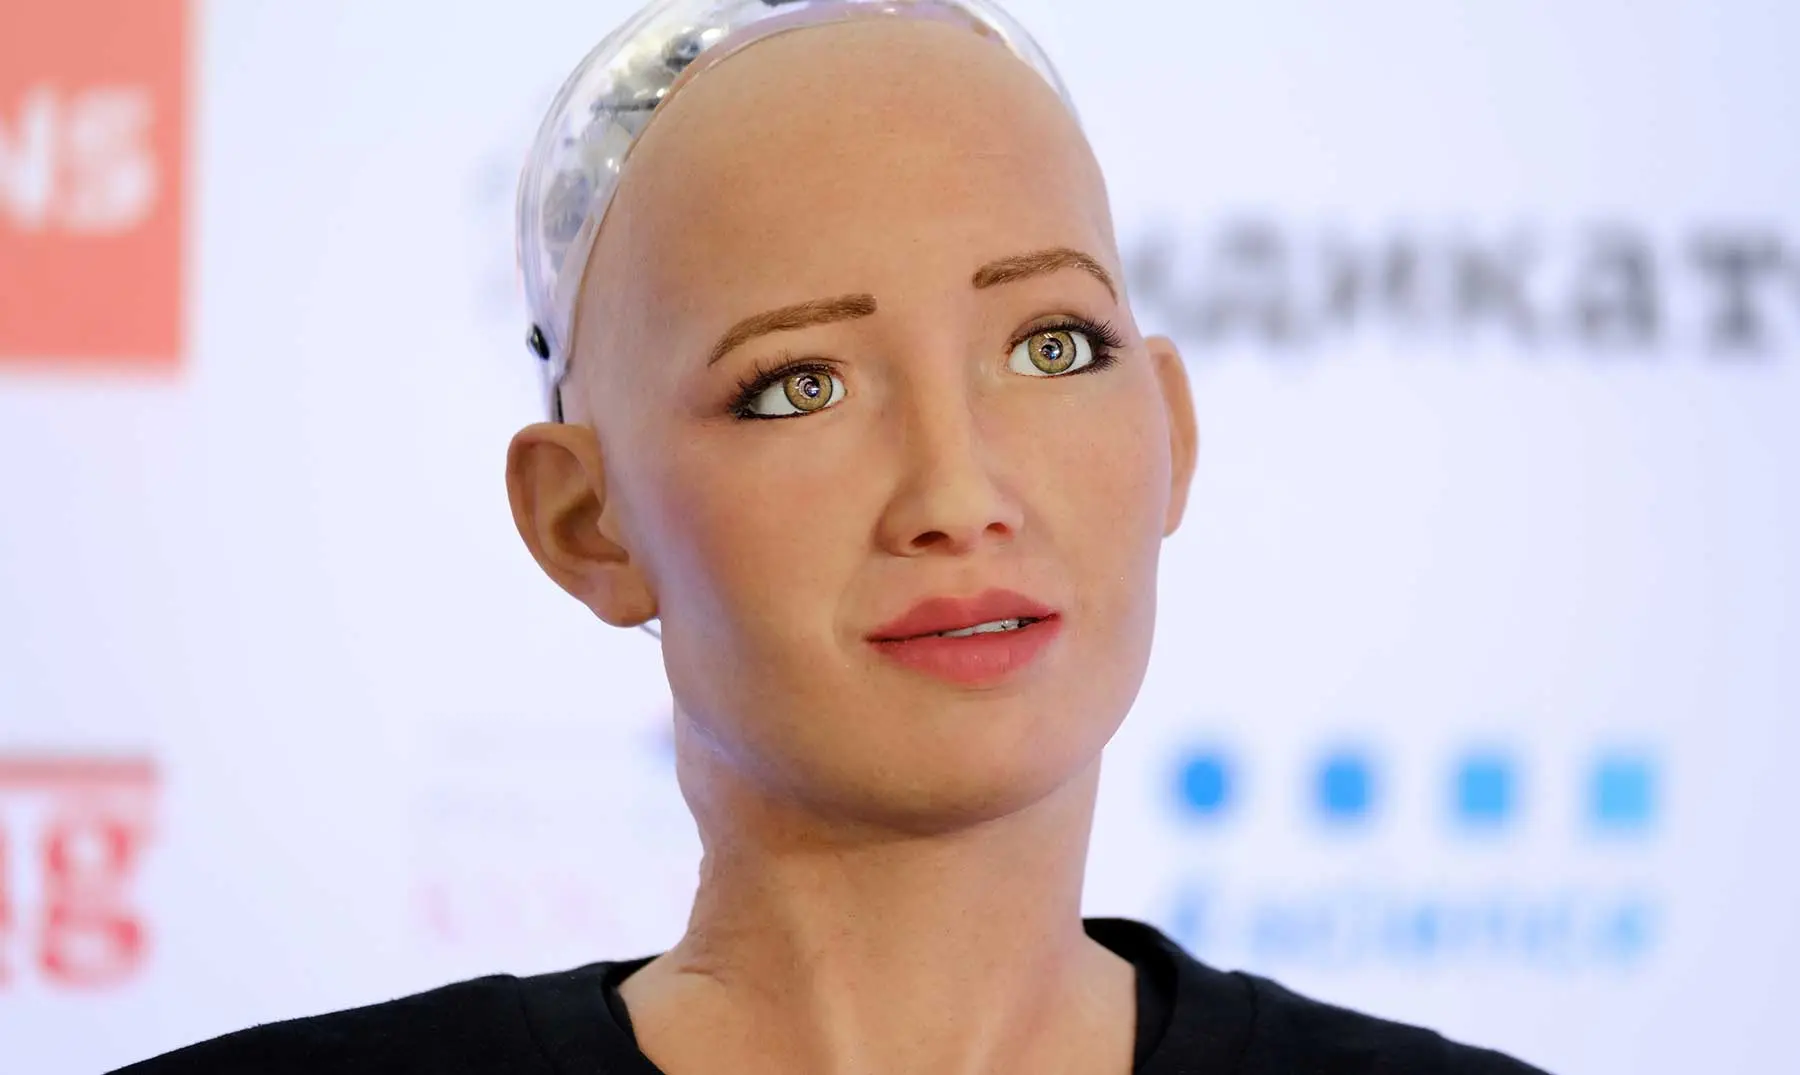 sofia la robot con inteligencia artificial - Qué prometió hacer la robot Sofía